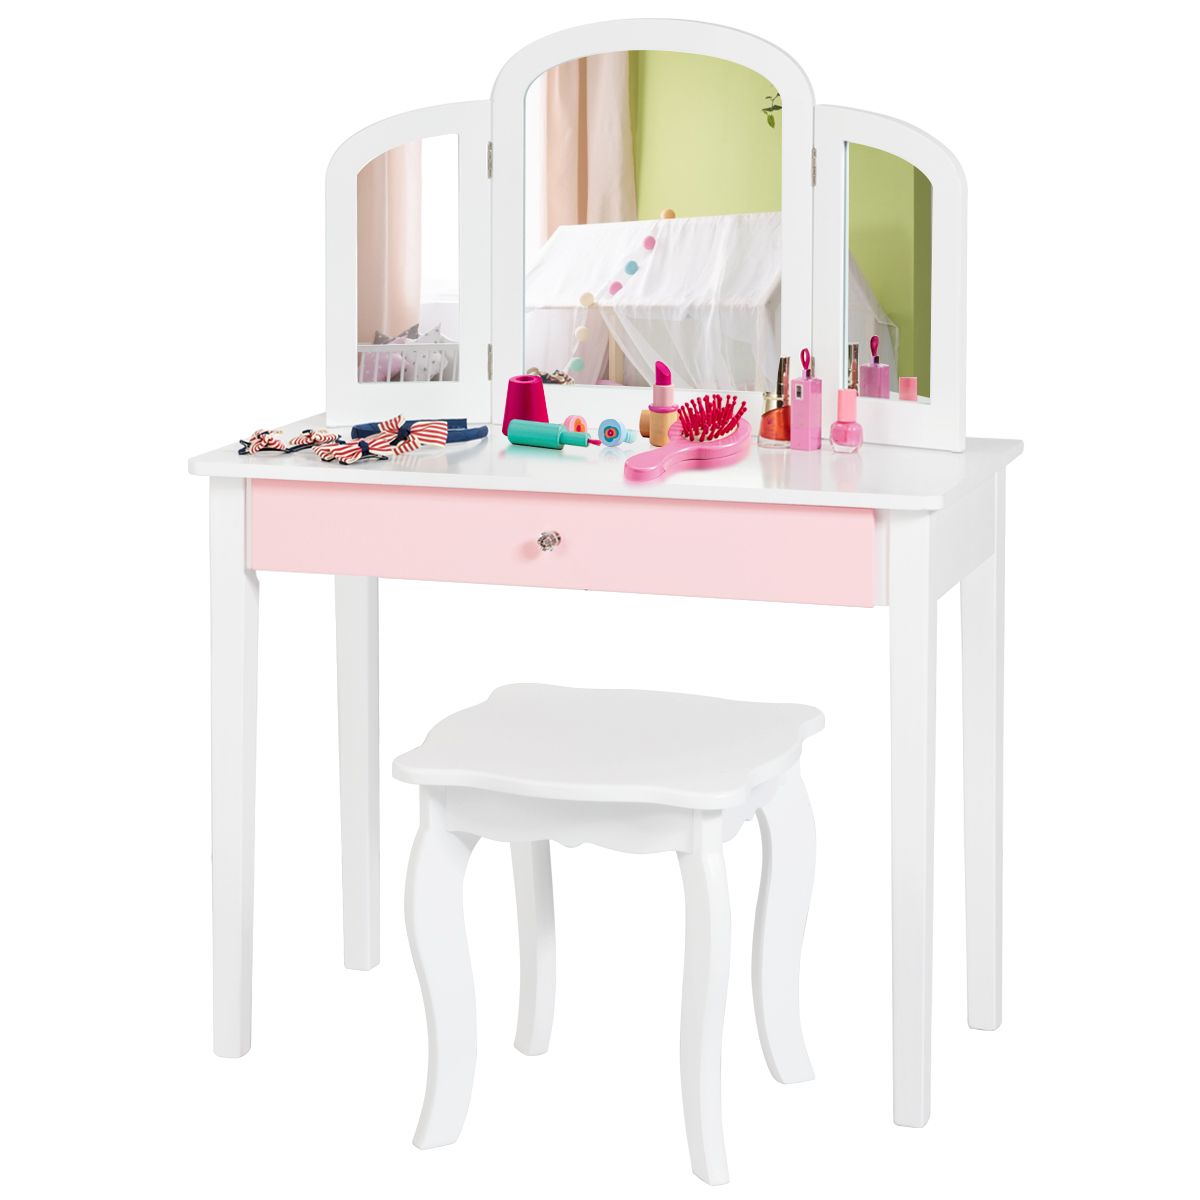 Dječji toaletni stolić 2 u 1 s trostrukim ogledalom i pretincom u bijeloj boji